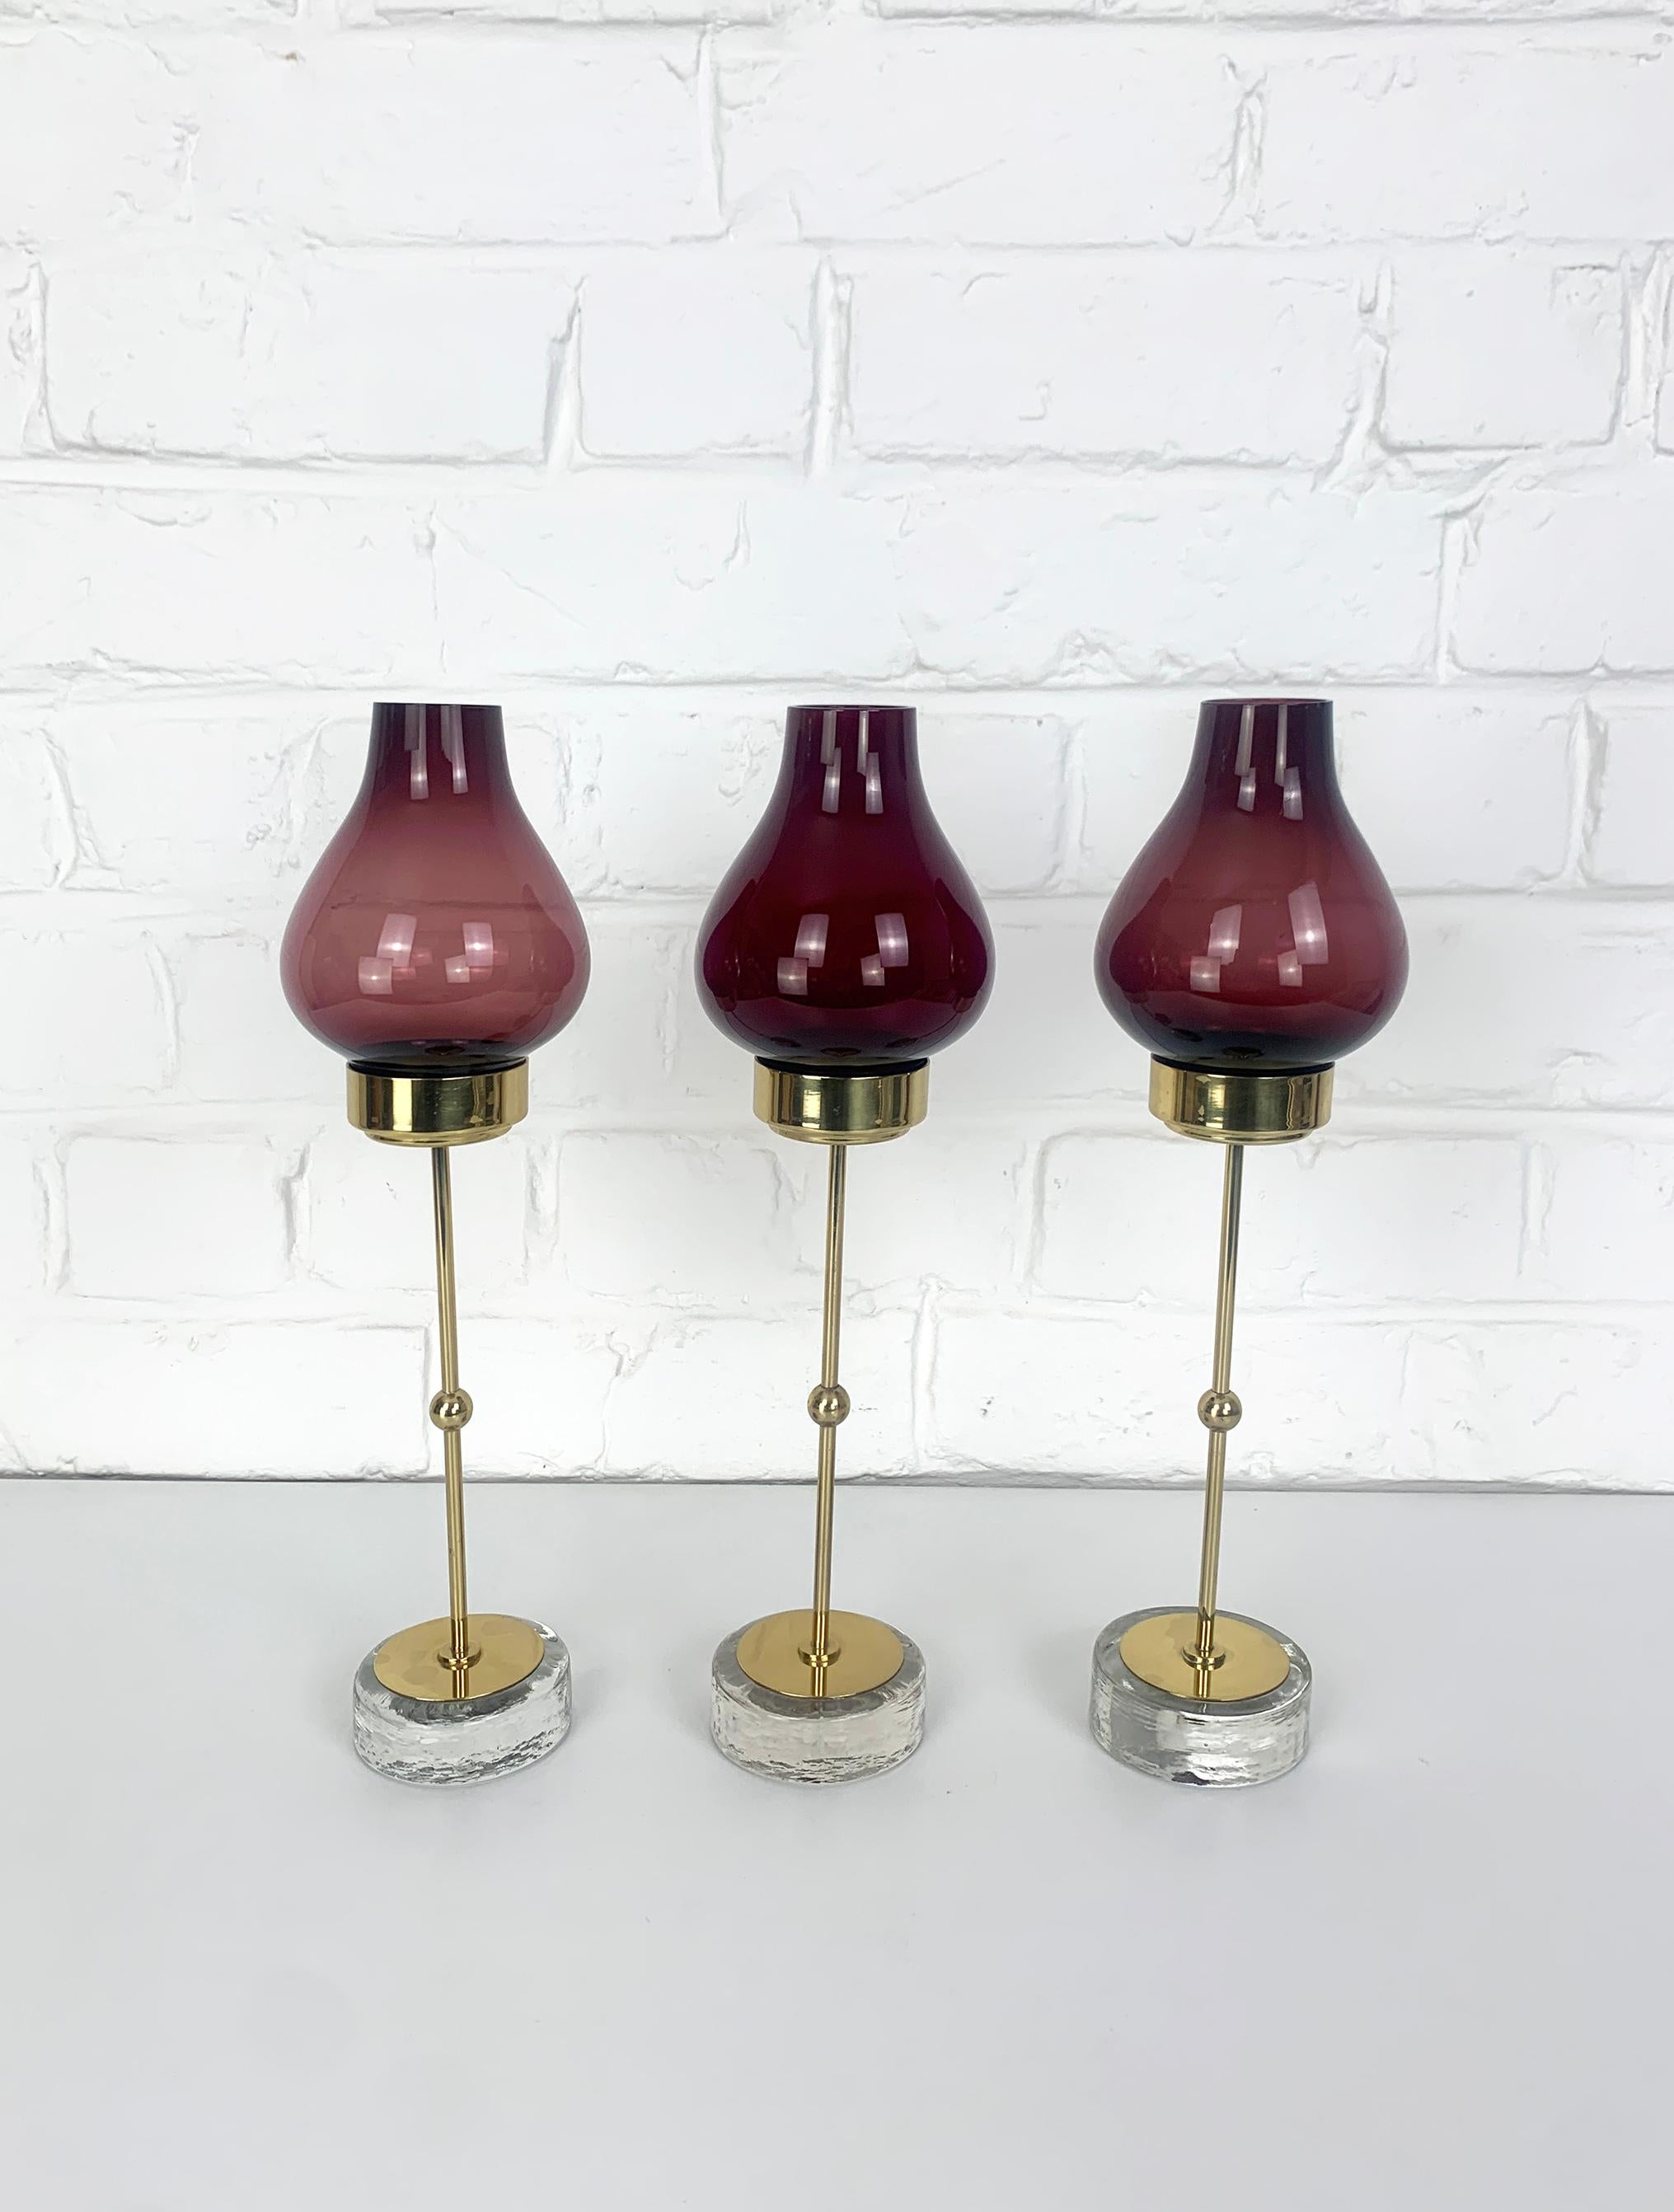 Satz von 3 schwedischen modernistischen Kerzenhaltern von Gunnar Ander. Produziert von Ystad-Metall in der schwedischen Stadt Ystad. 

Kerzenständer aus massivem, poliertem Messing auf einem Sockel aus klarem Glas mit unregelmäßigem